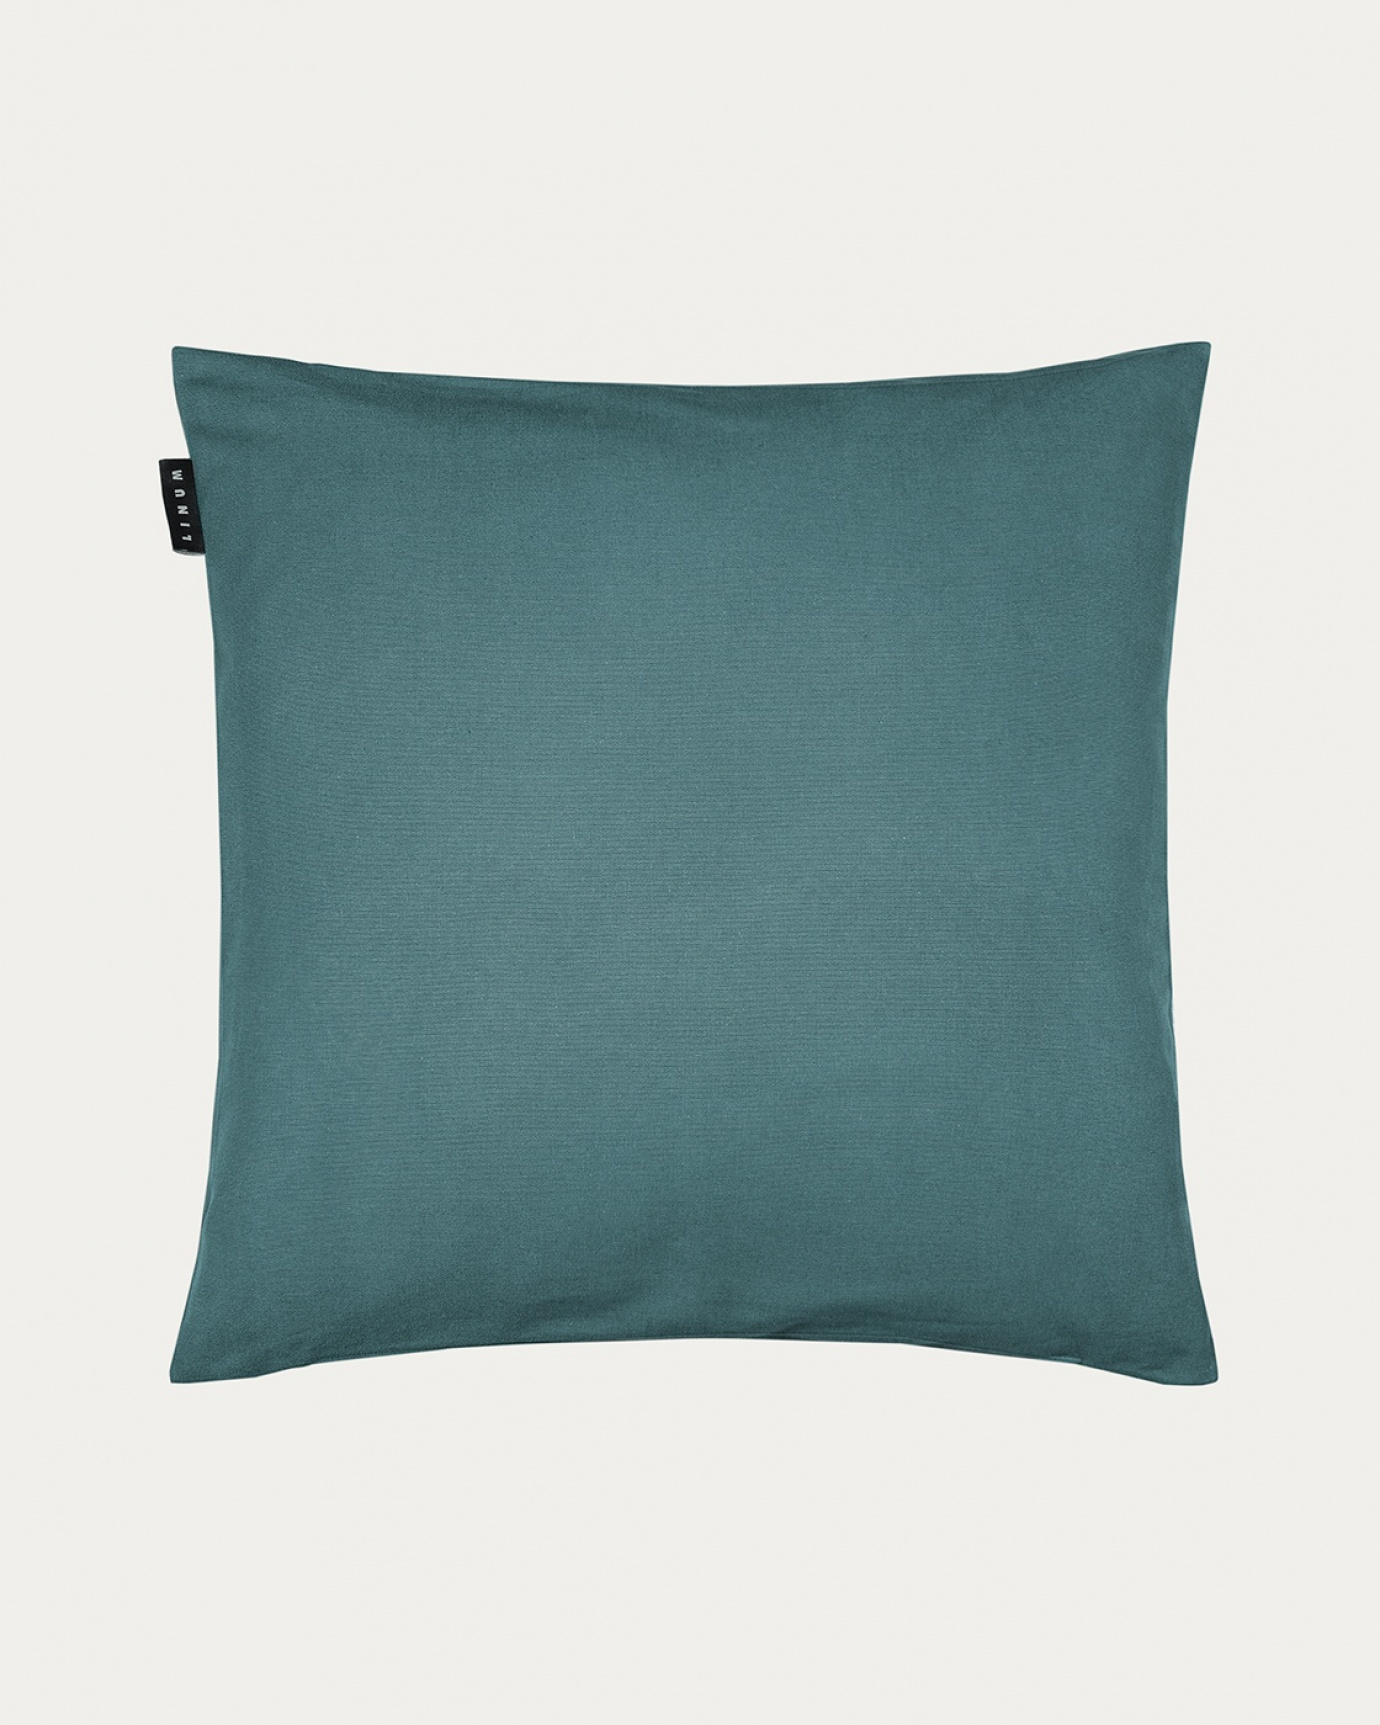 Image du produit housse de coussin ANNABELL gris foncé turquoise en coton doux de LINUM DESIGN. Taille 50 x 50 cm.